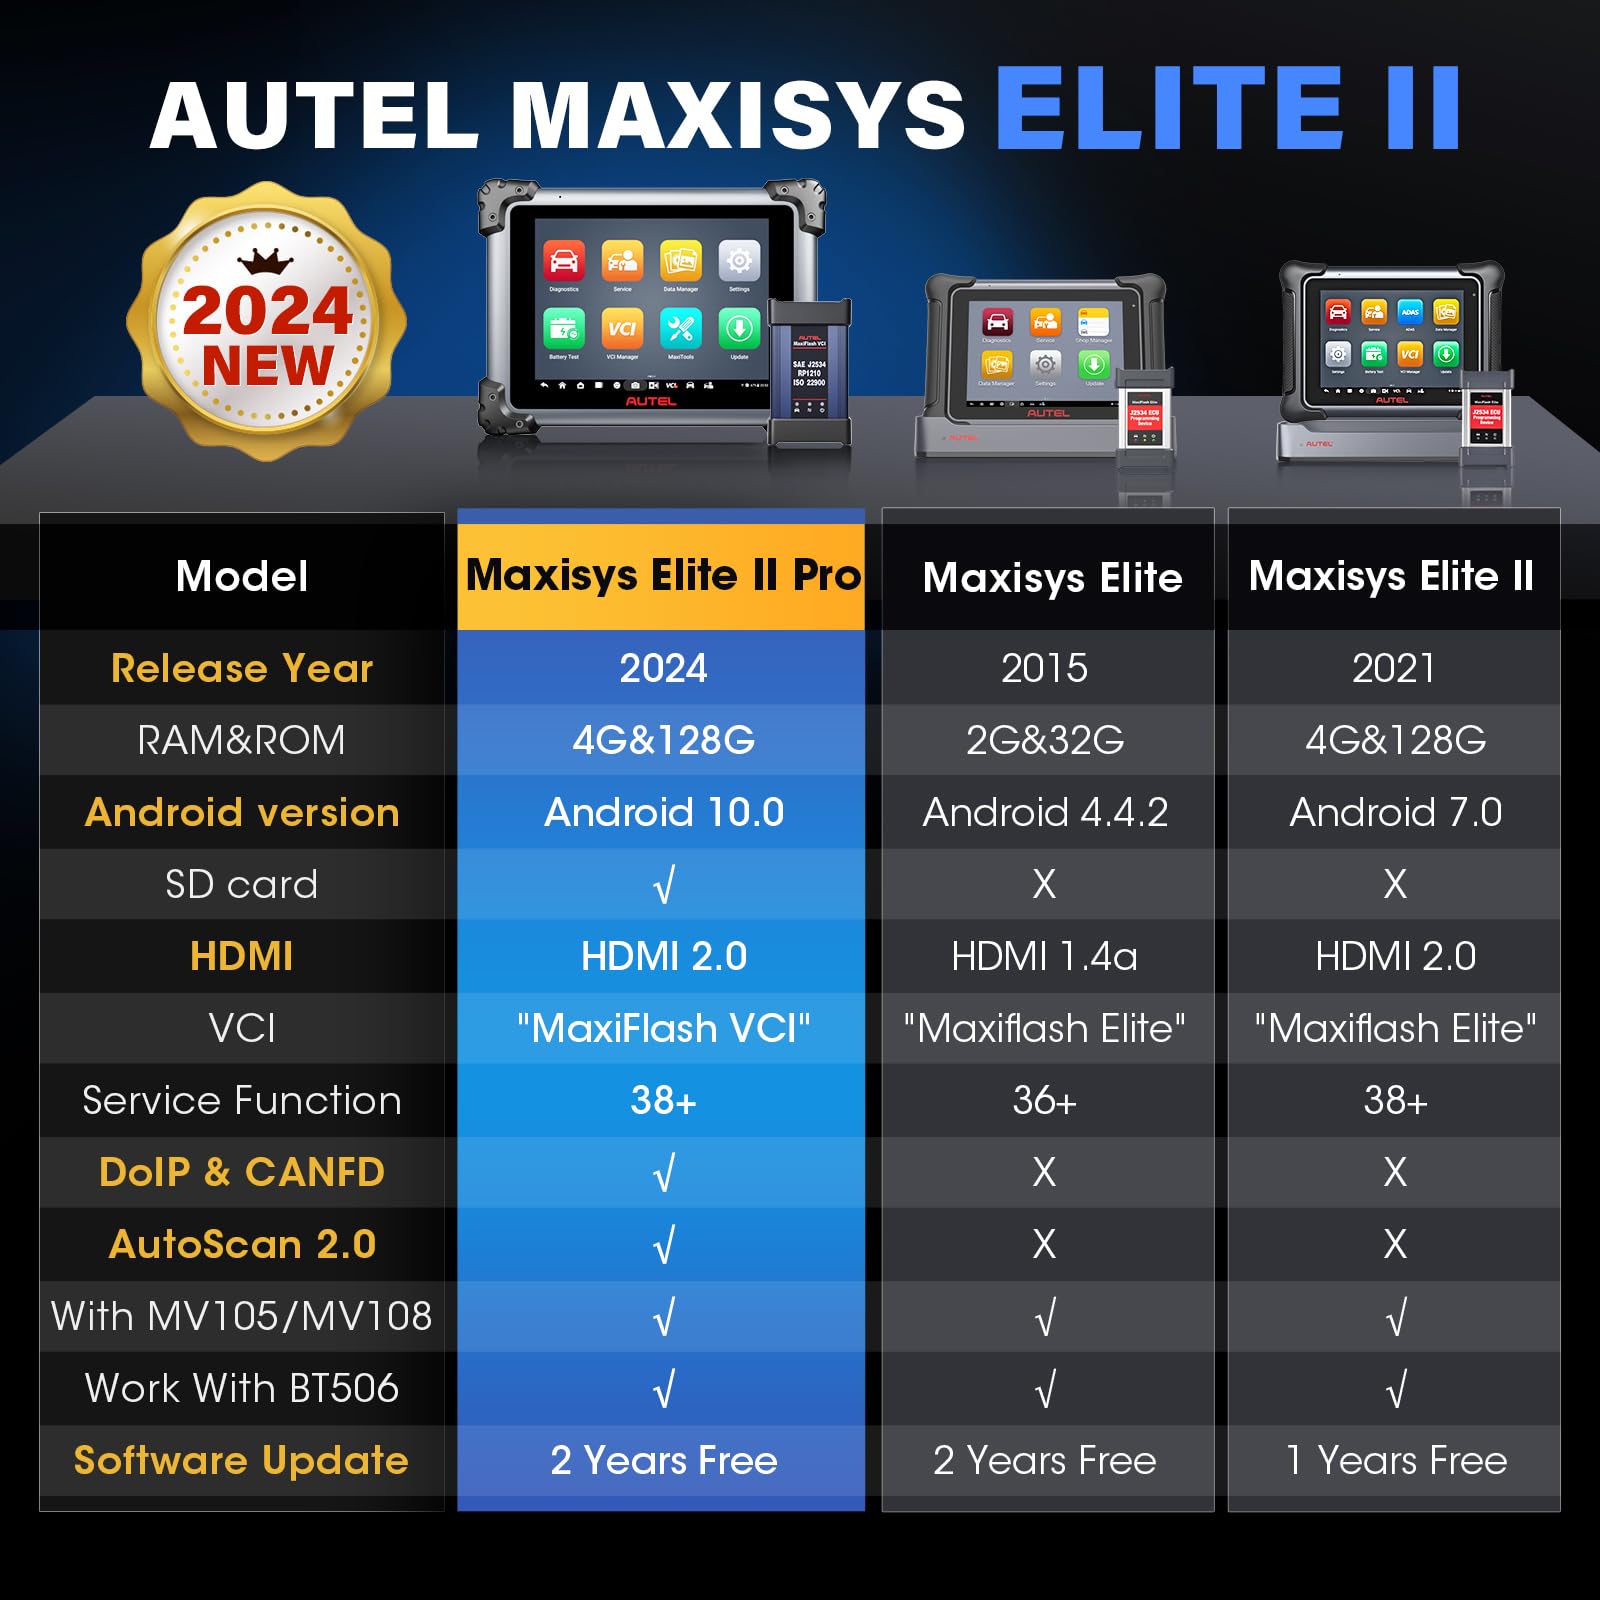 Autel Maxisys Elite Series Comparison